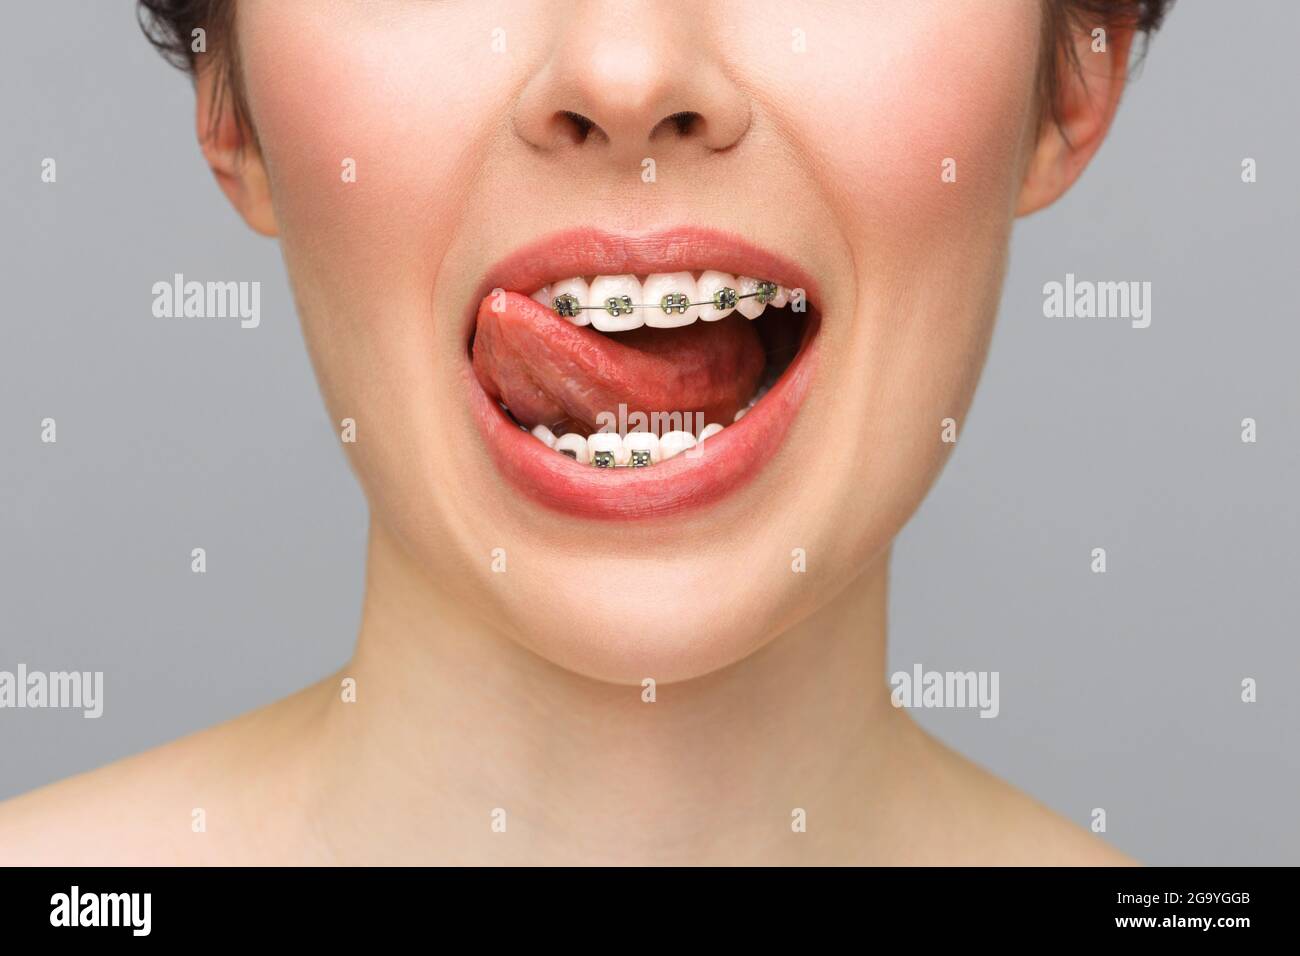 Kieferorthopädische Behandlung. Konzept Der Zahnpflege. Nahaufnahme Keramik- und Metallhalterungen an den Zähnen. Schönes Lächeln mit Zahnspangen. Stockfoto